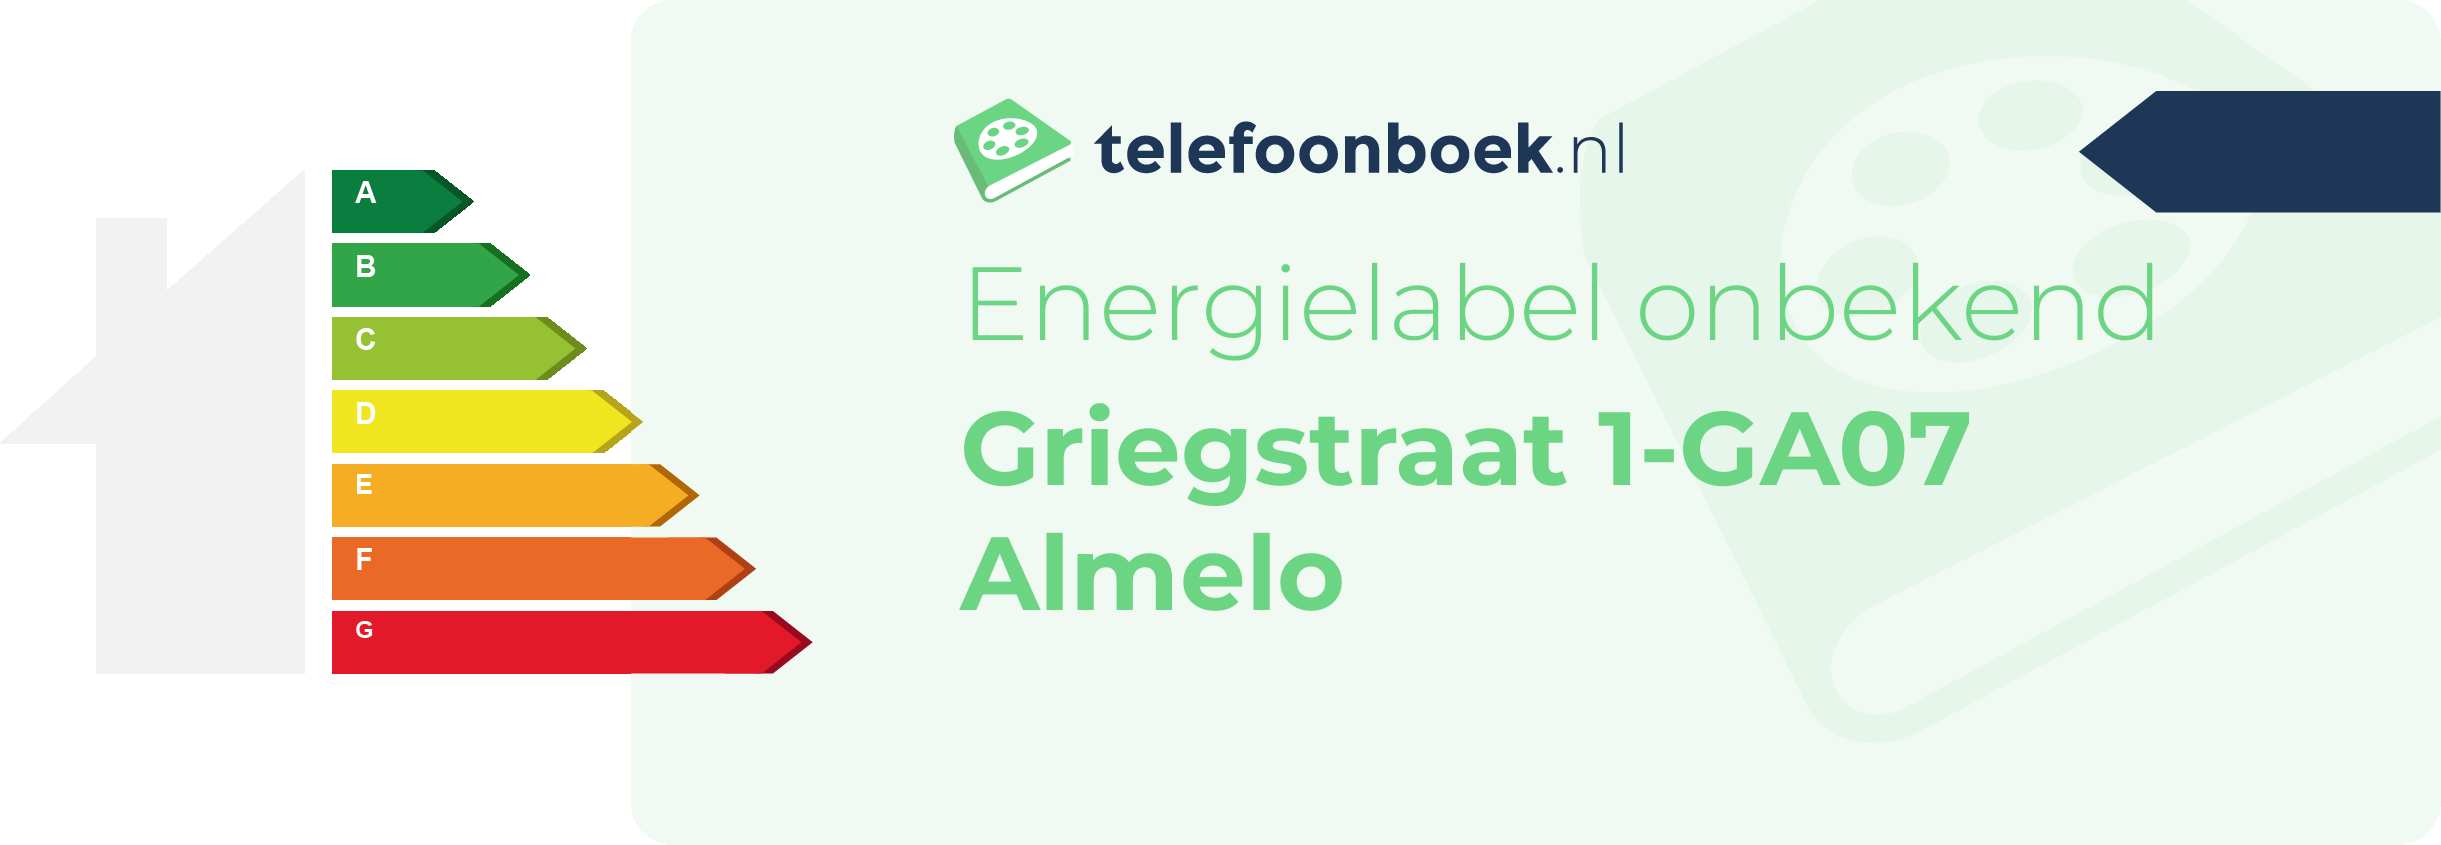 Energielabel Griegstraat 1-GA07 Almelo